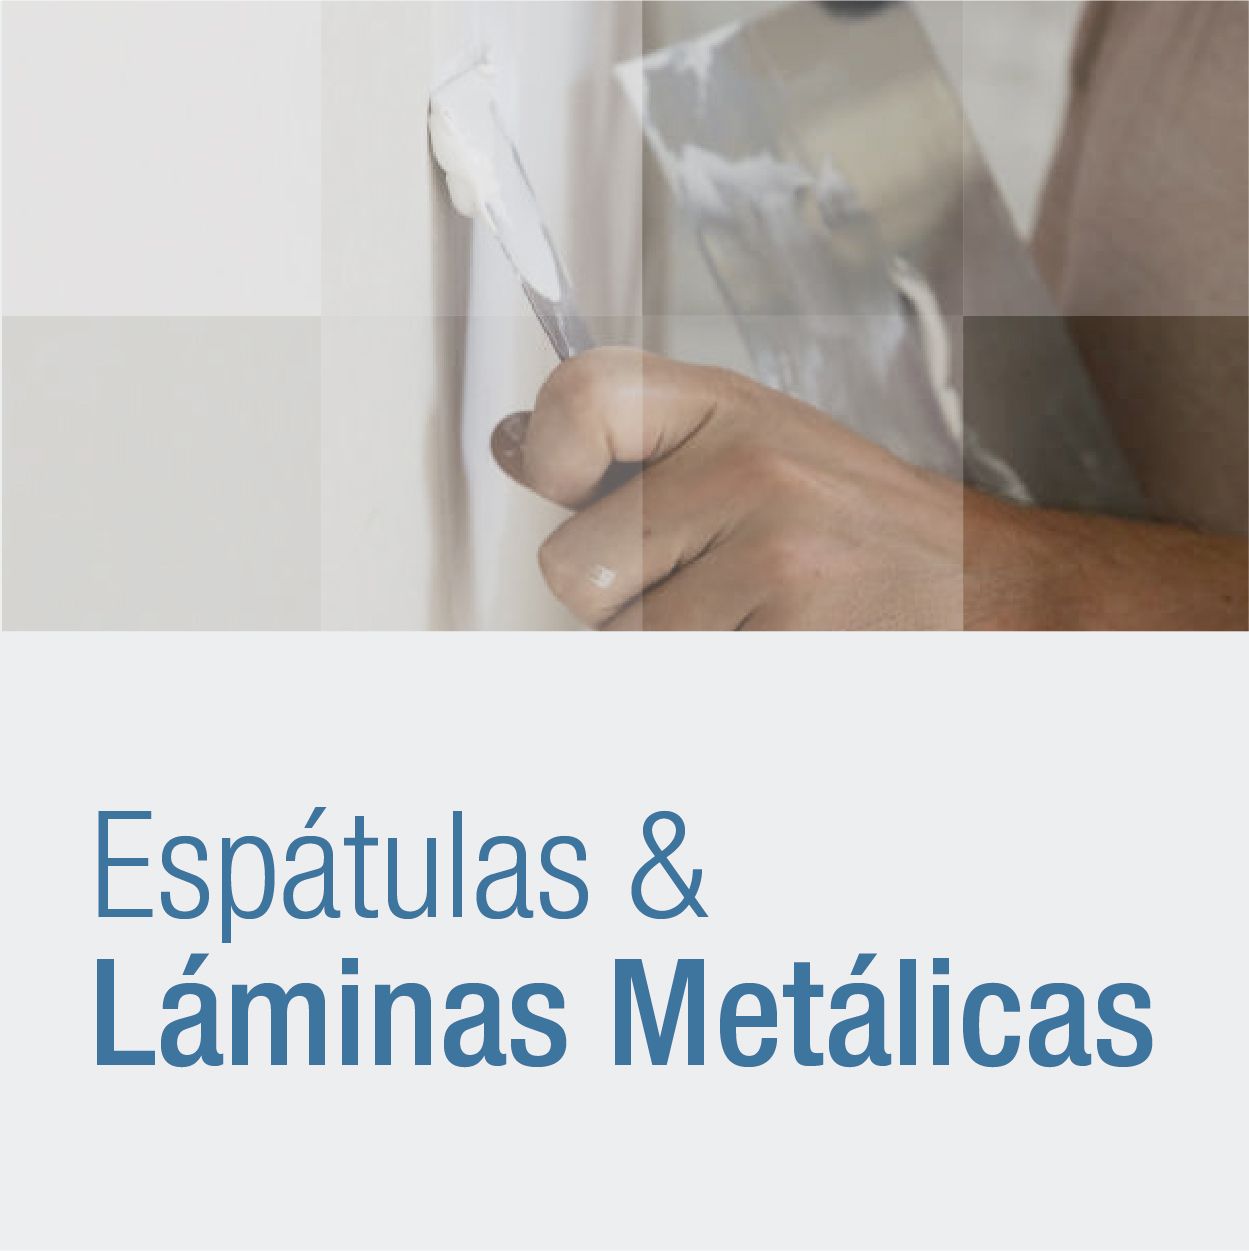 encabezado_espatulas_metalicas_laminas